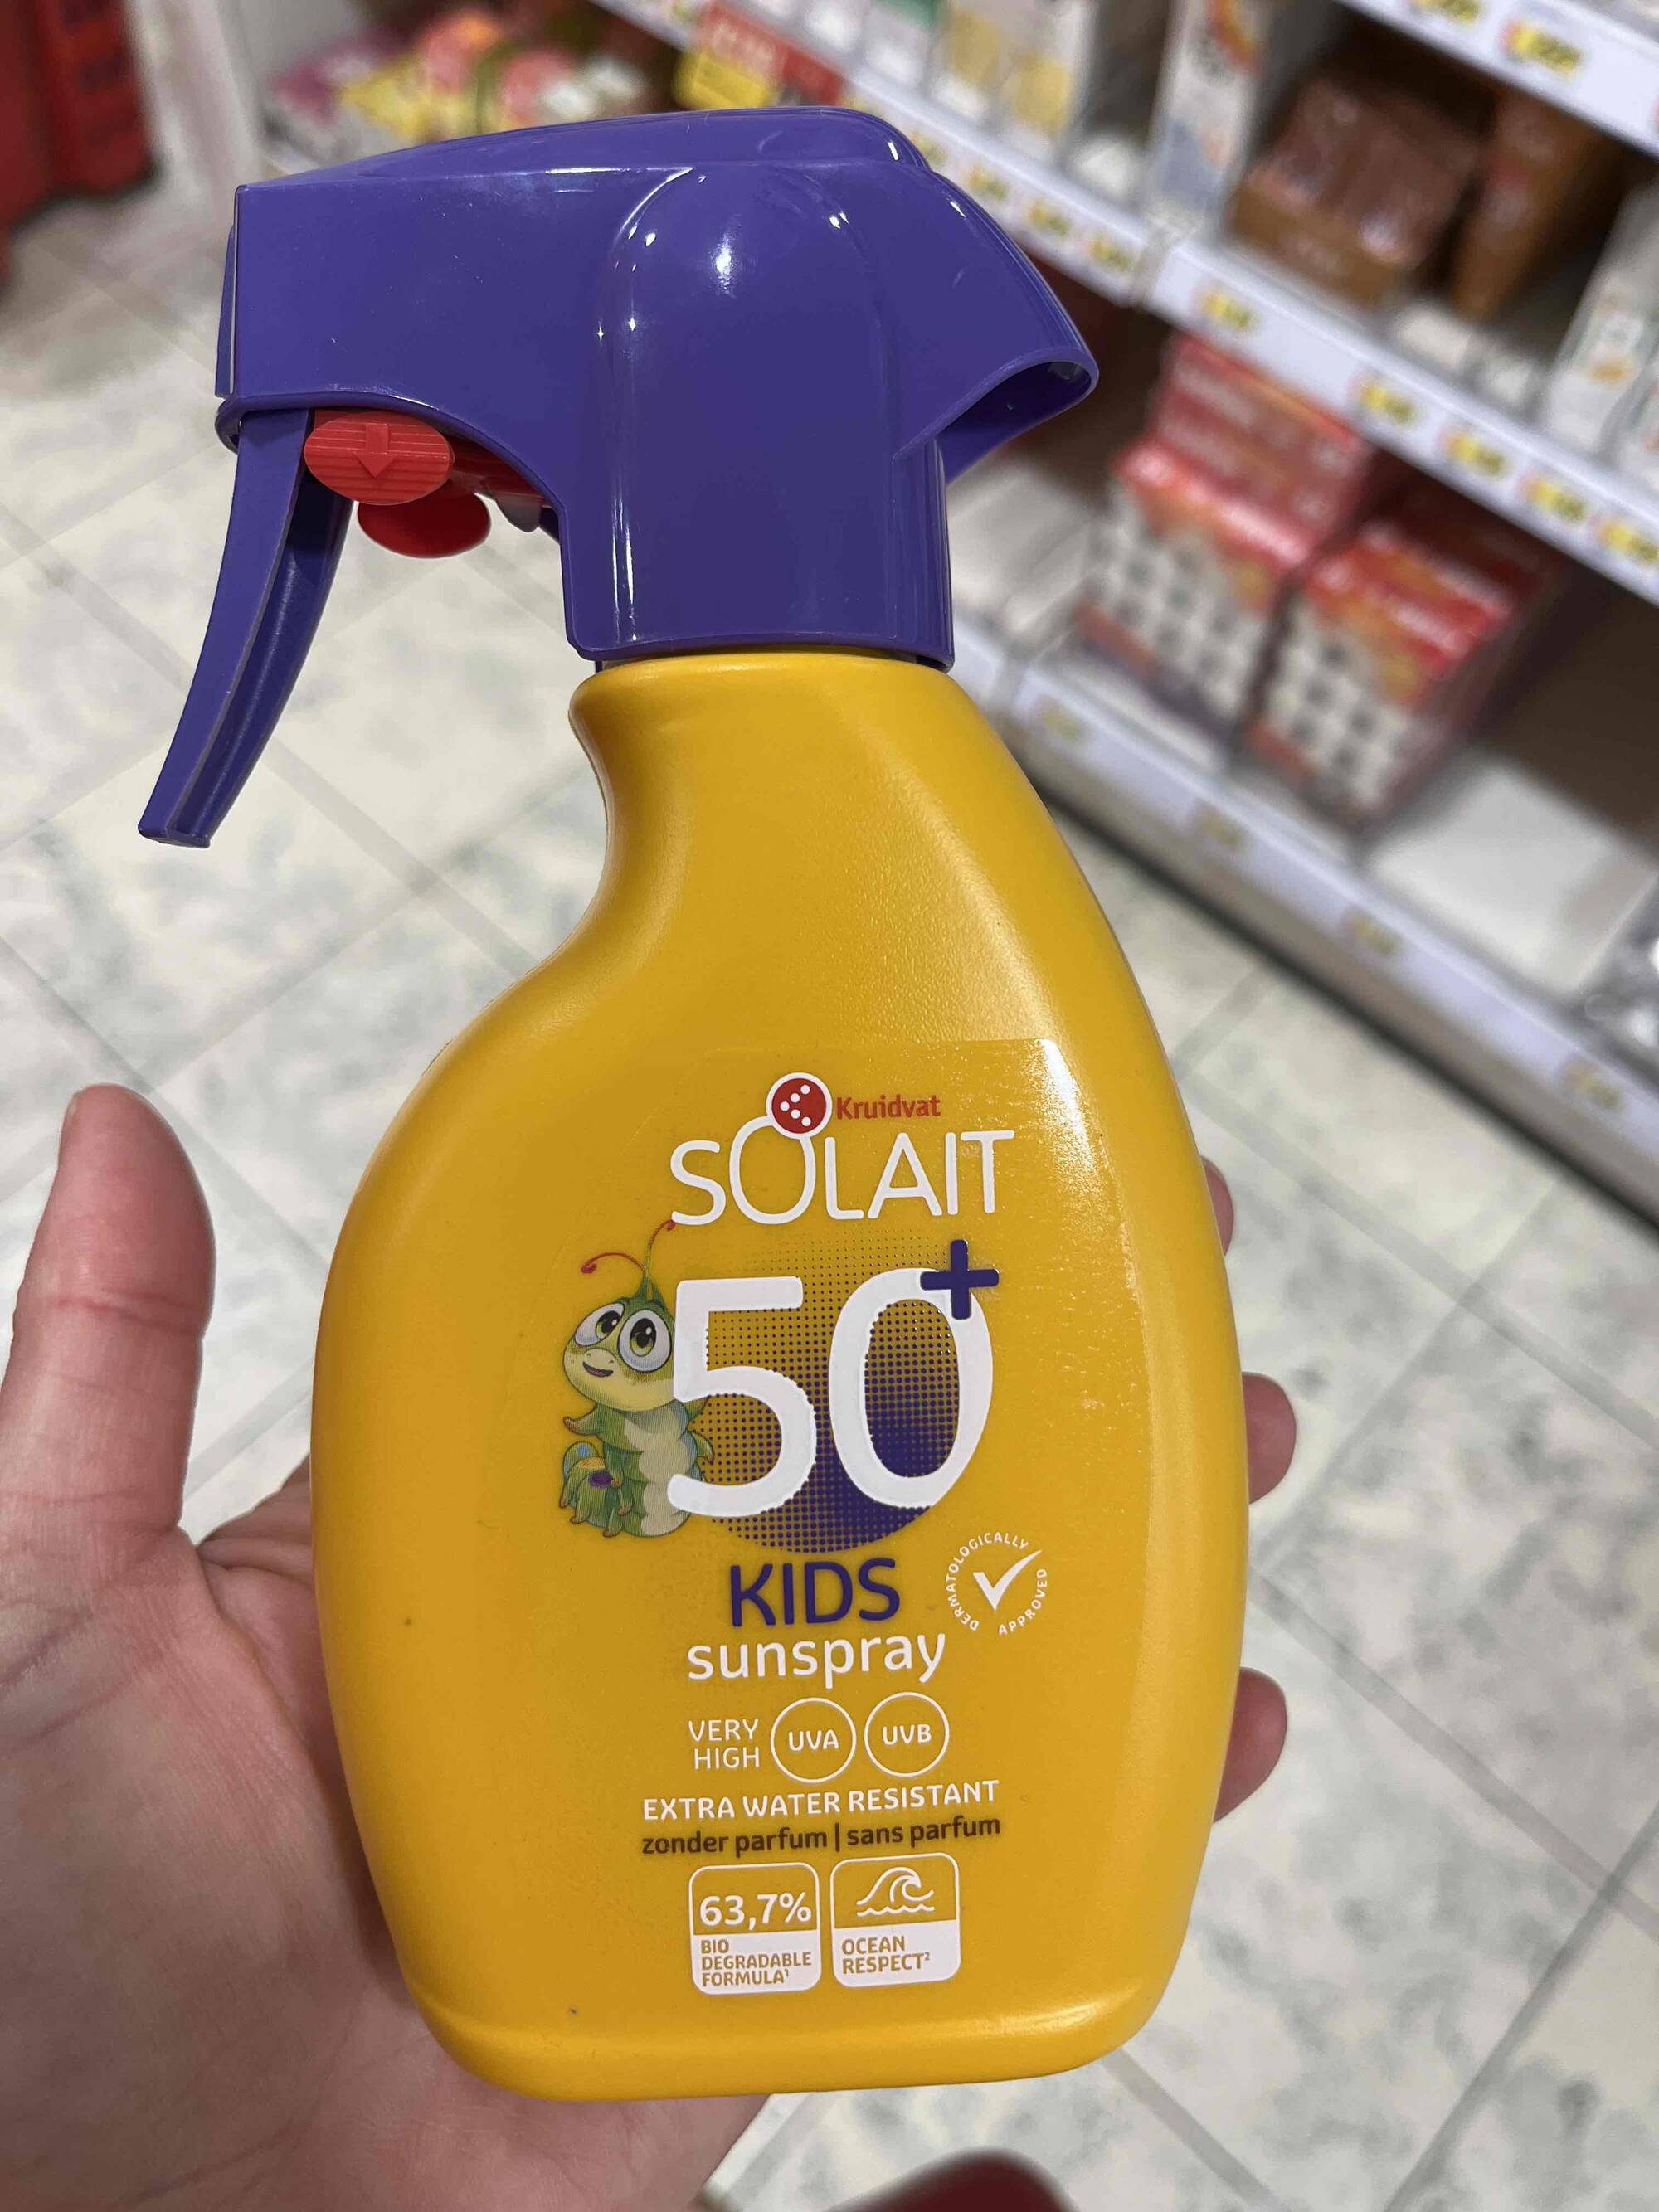 KRUIDVAT - Solait - Kids sunspray very high 50+